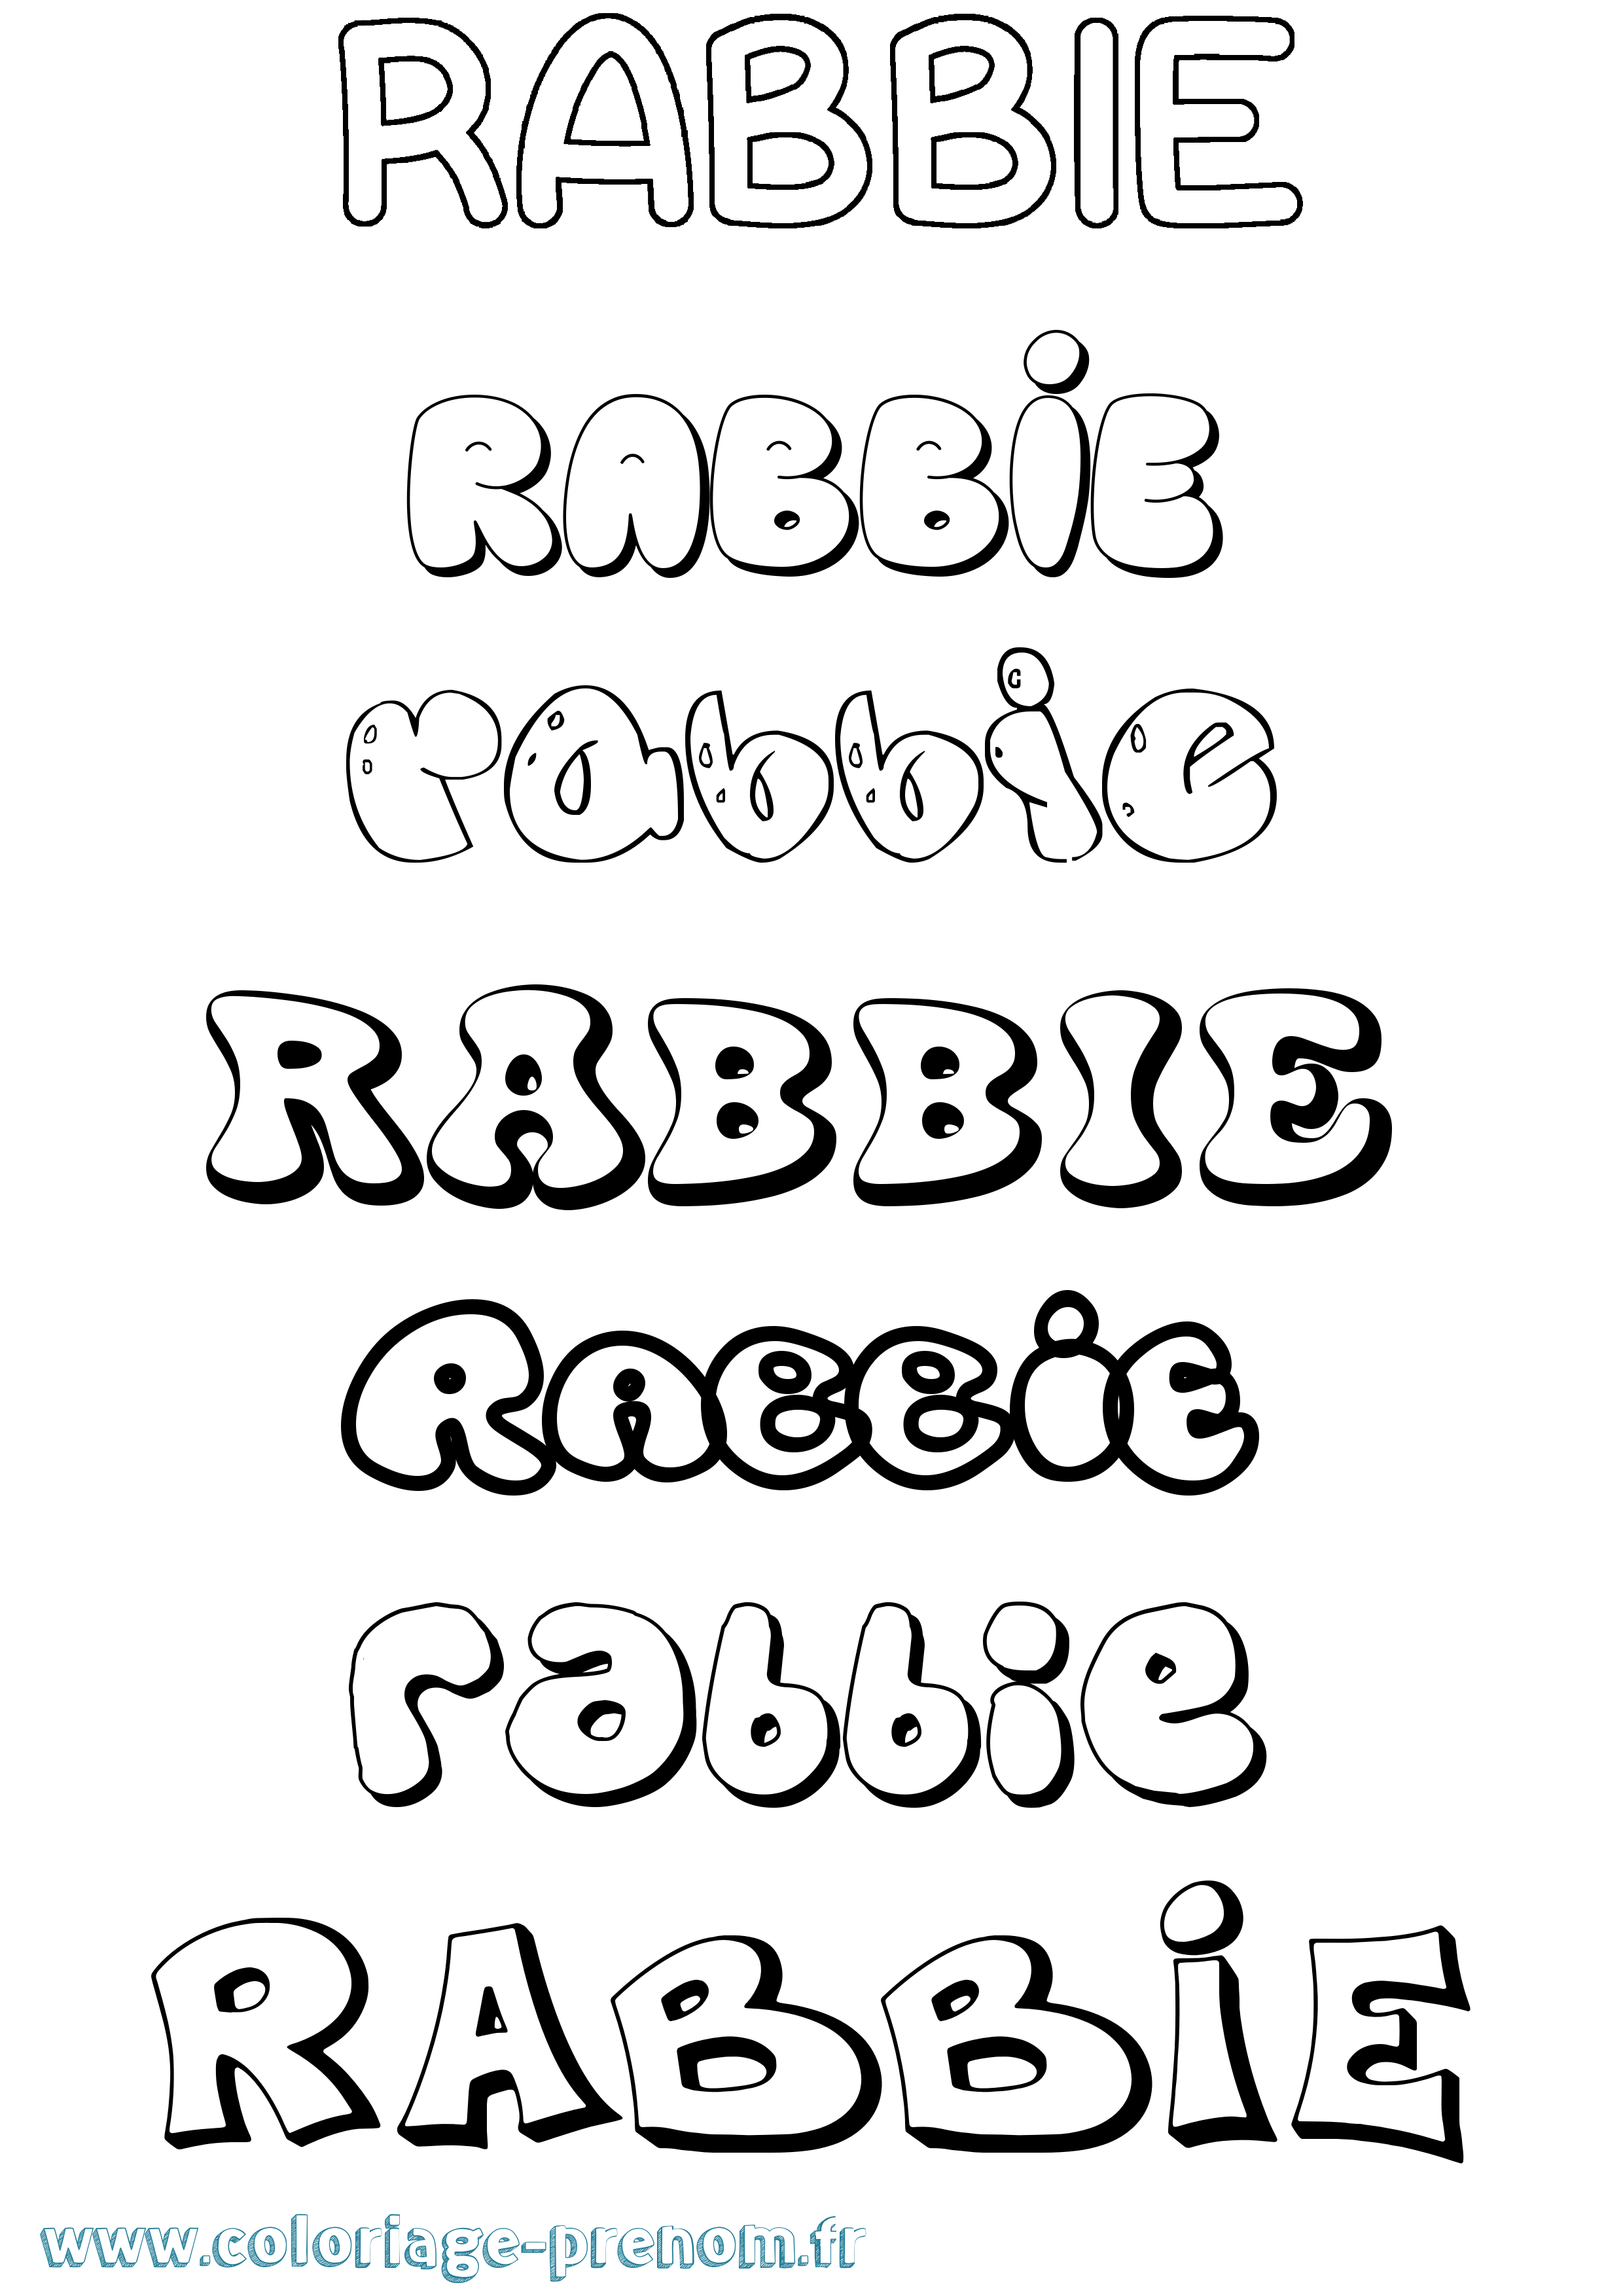 Coloriage prénom Rabbie Bubble